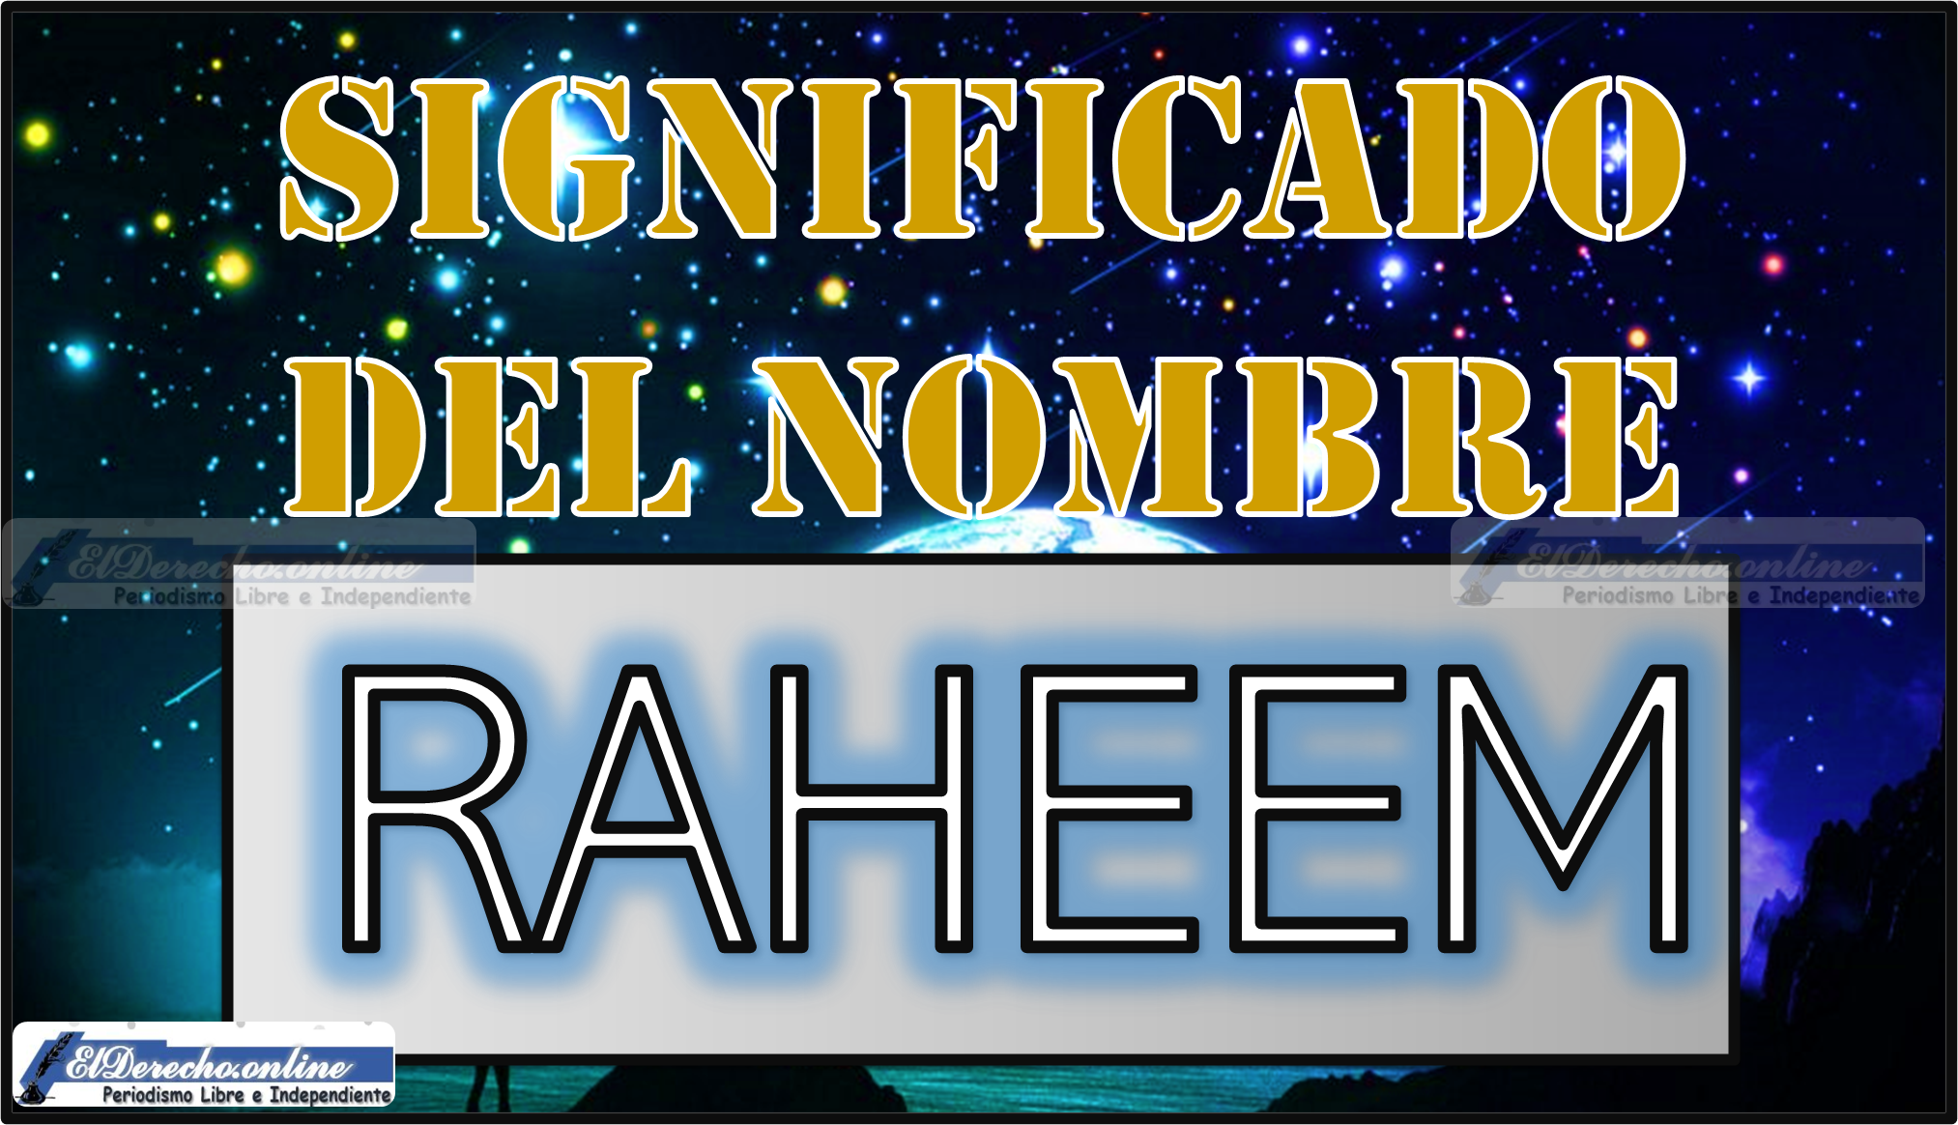 Significado del nombre Raheem, su origen y más